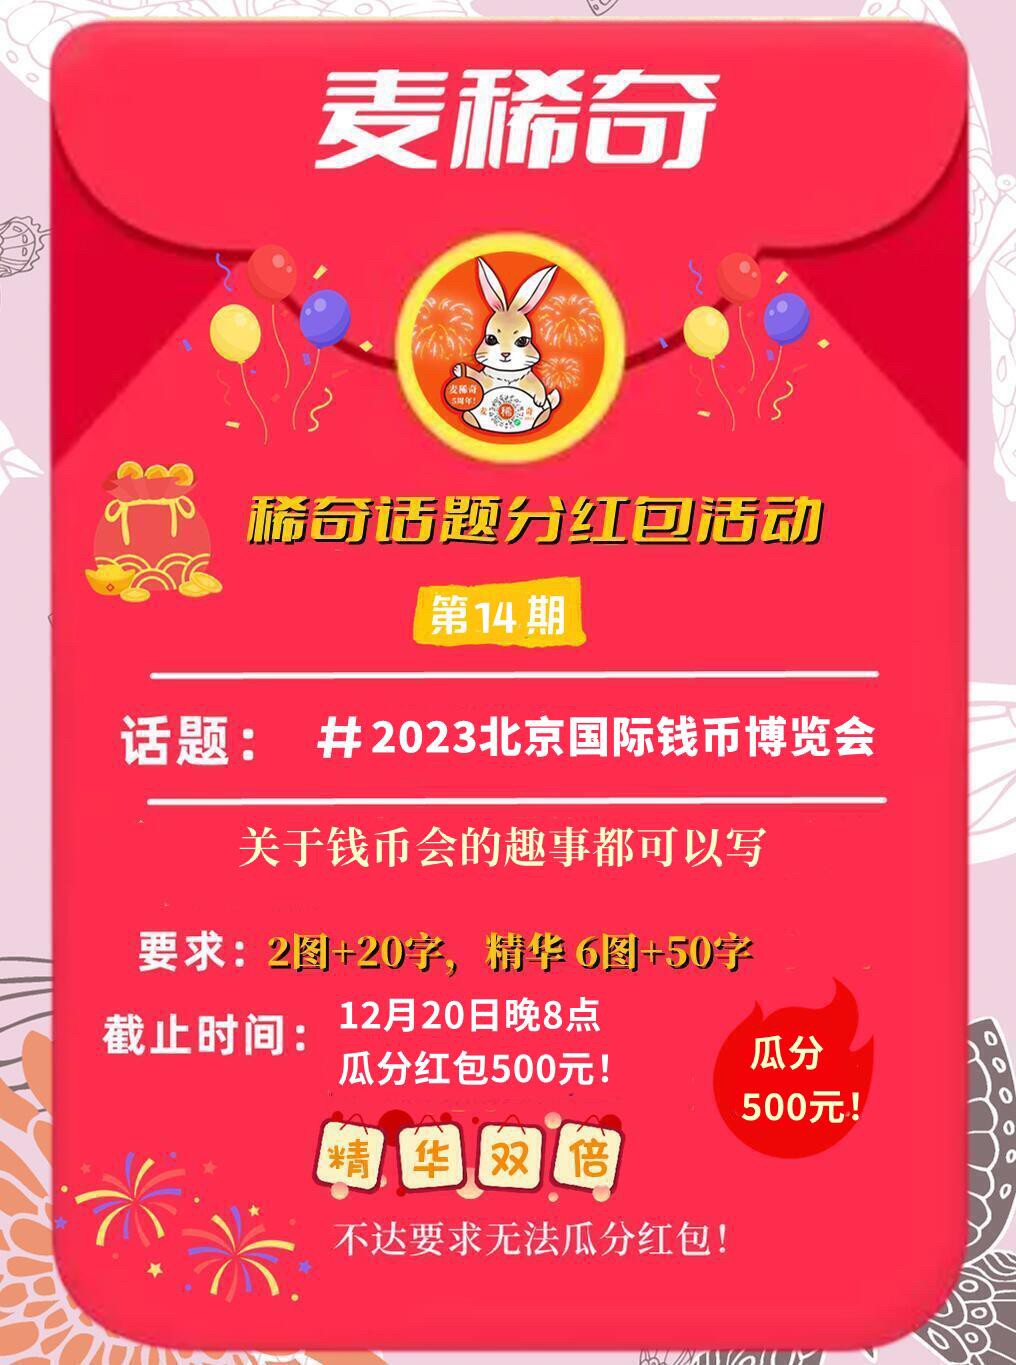 【稀奇话题分红包活动】2023北京国际钱币博览会